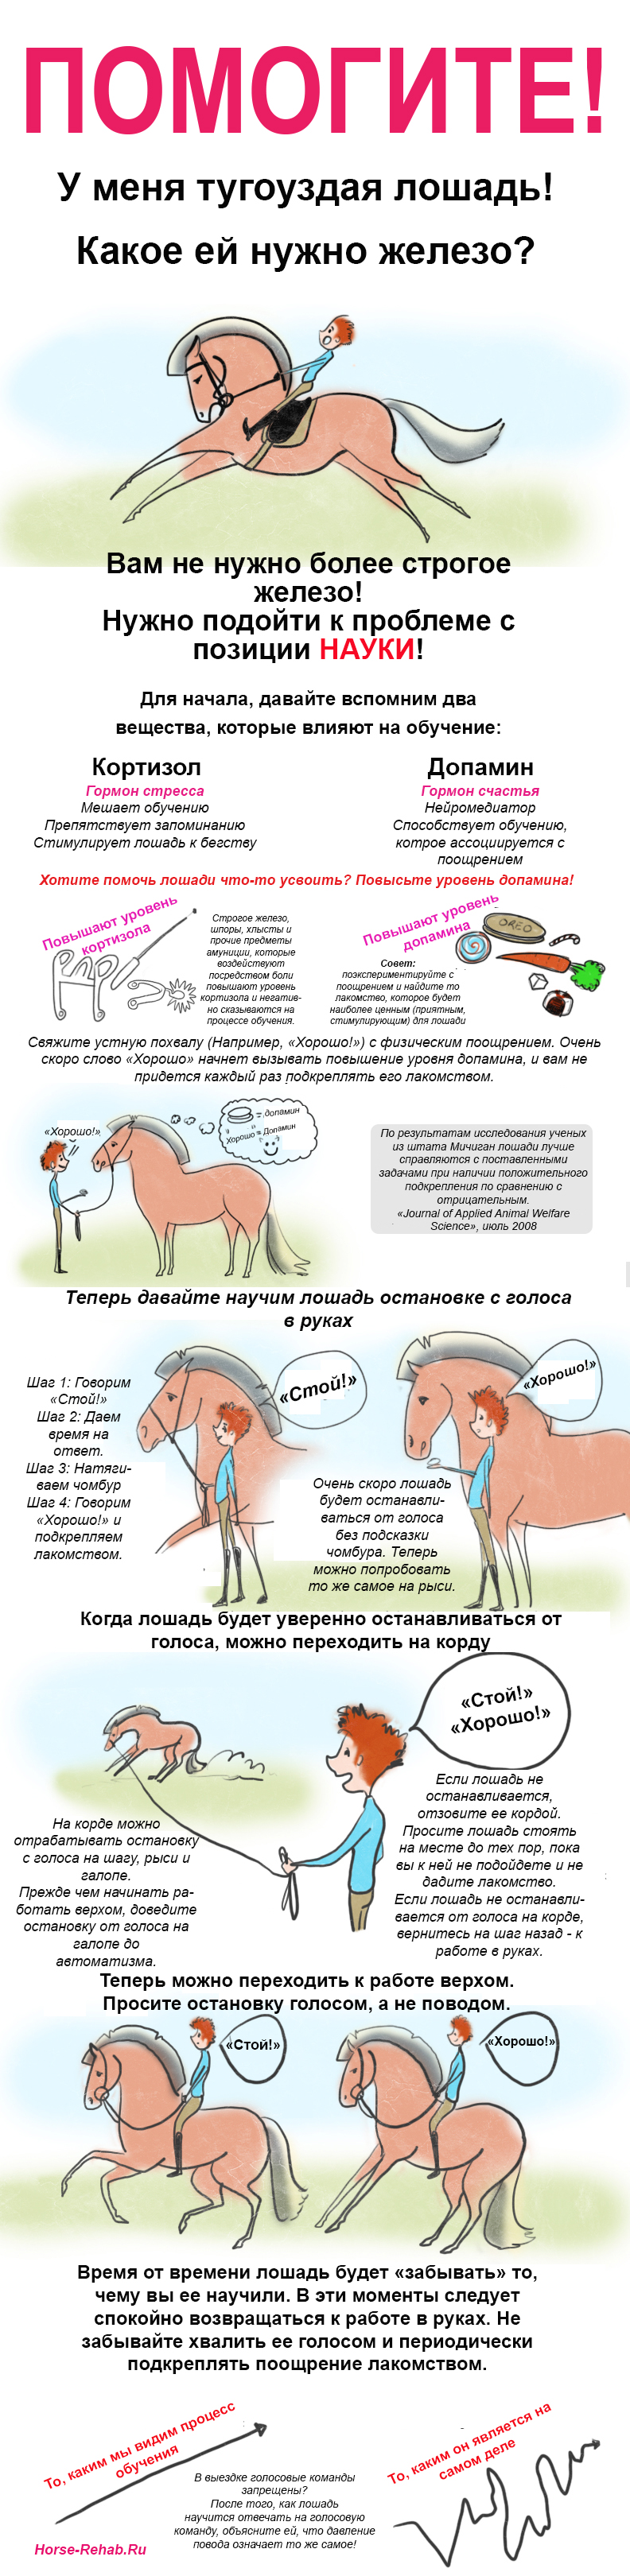 Horse-Rehab.Ru